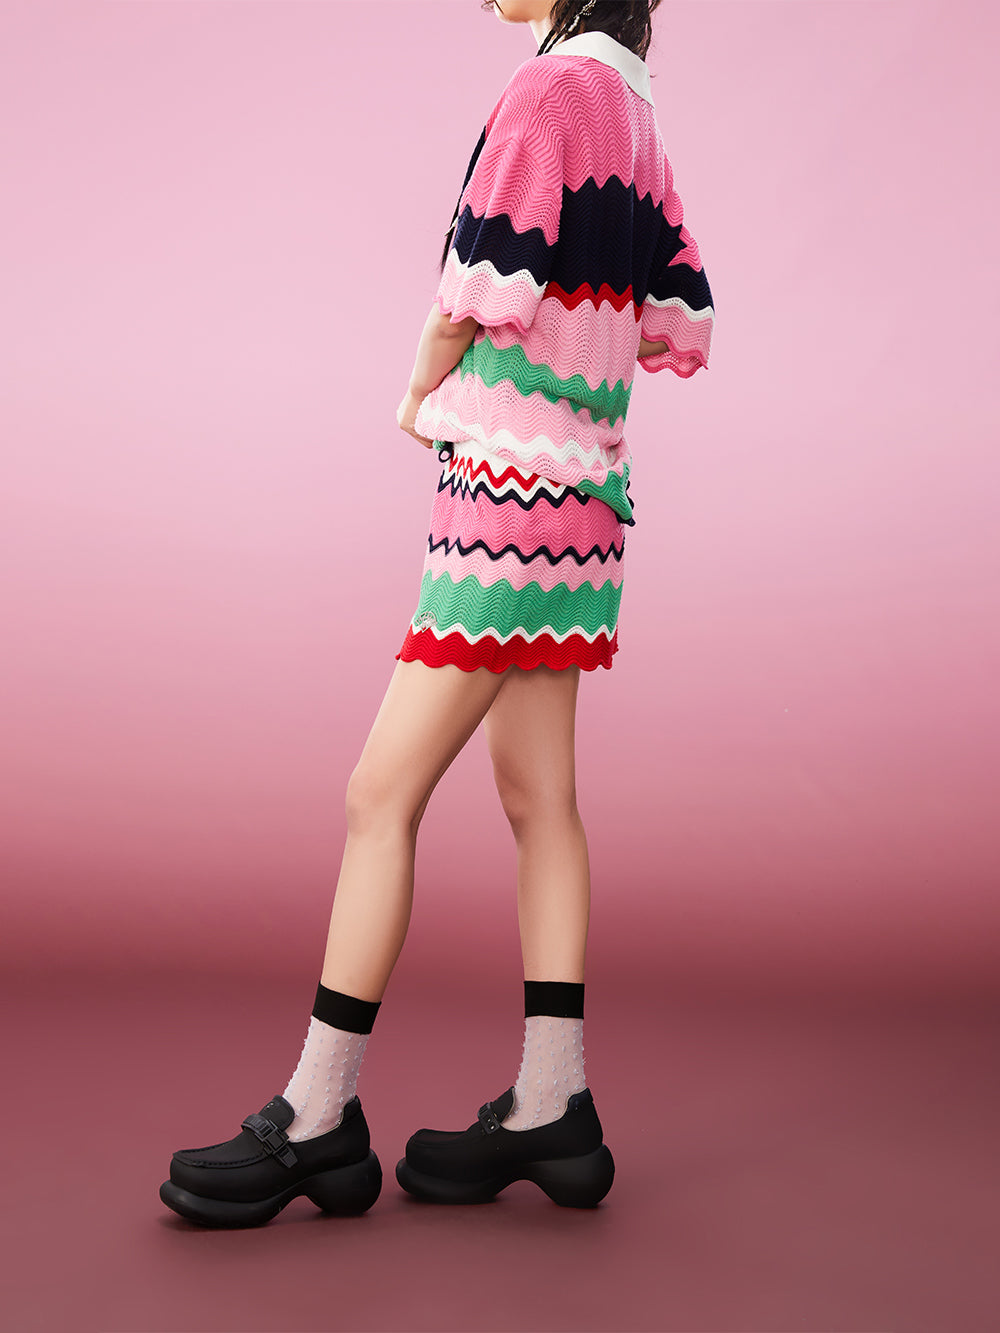 MUKZIN Striped Color Contrast Loose Pop T-Shirt Knitwear